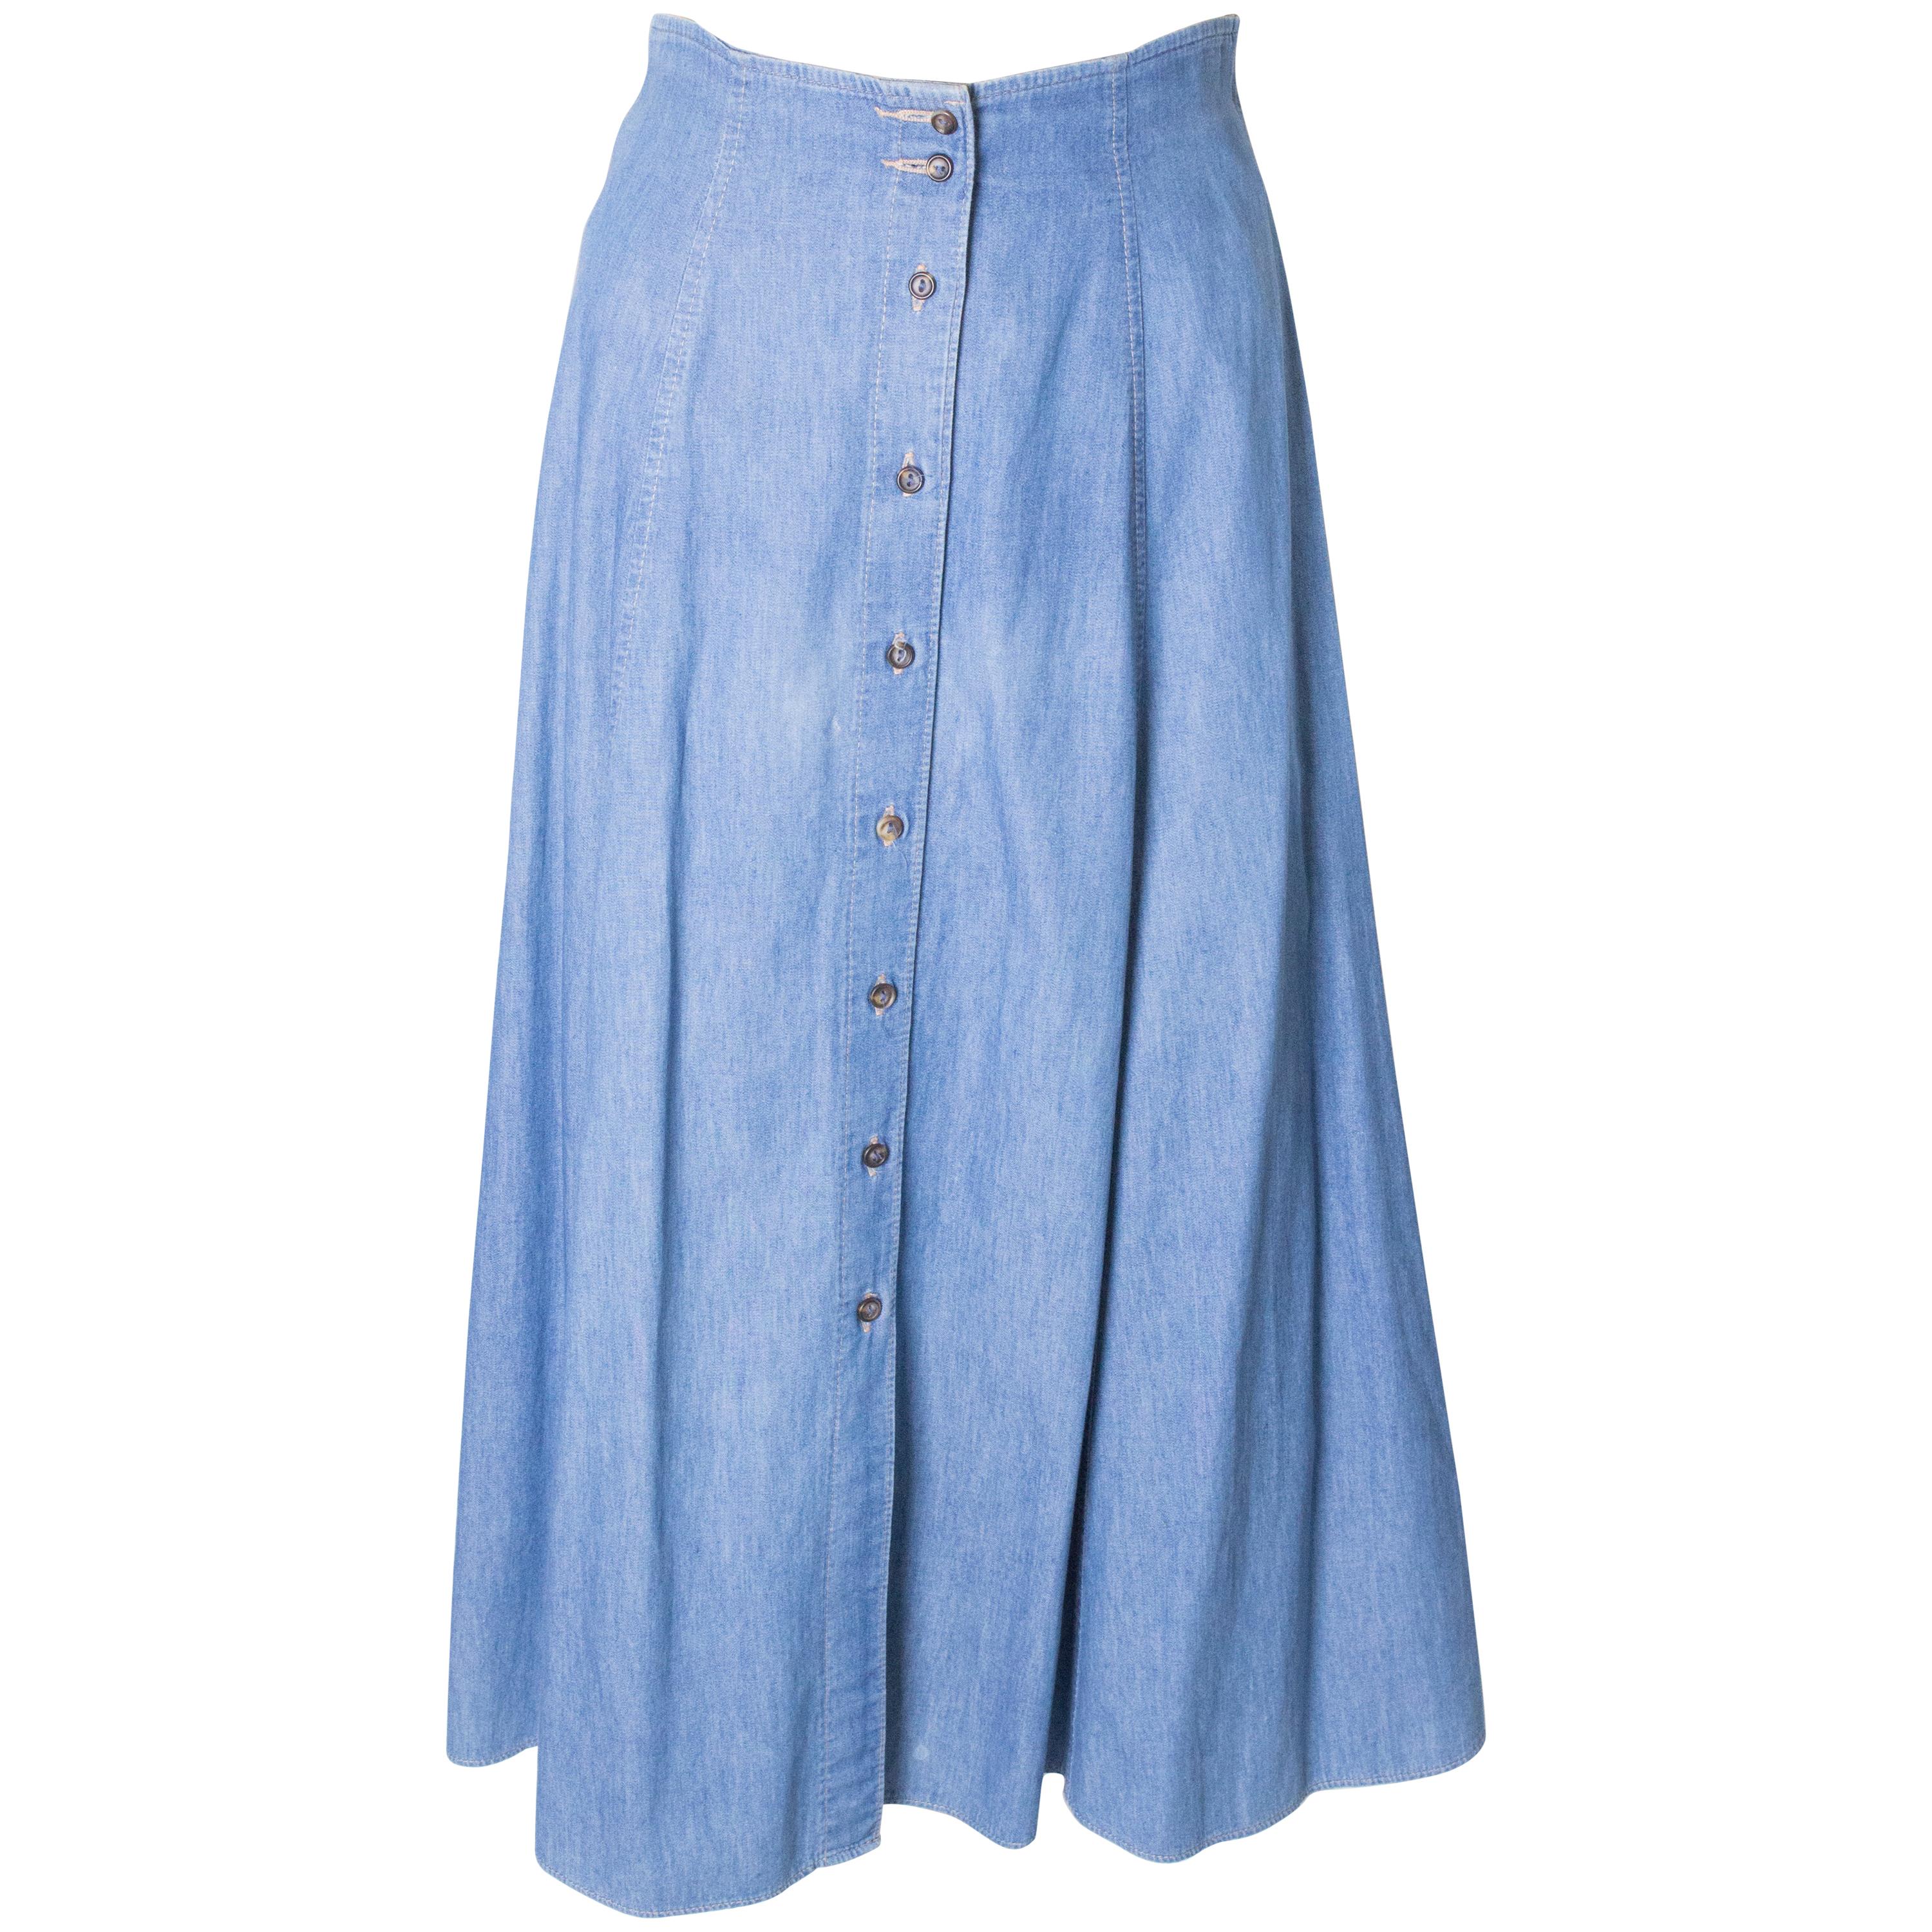 Vintage Button Through Denim Skirt